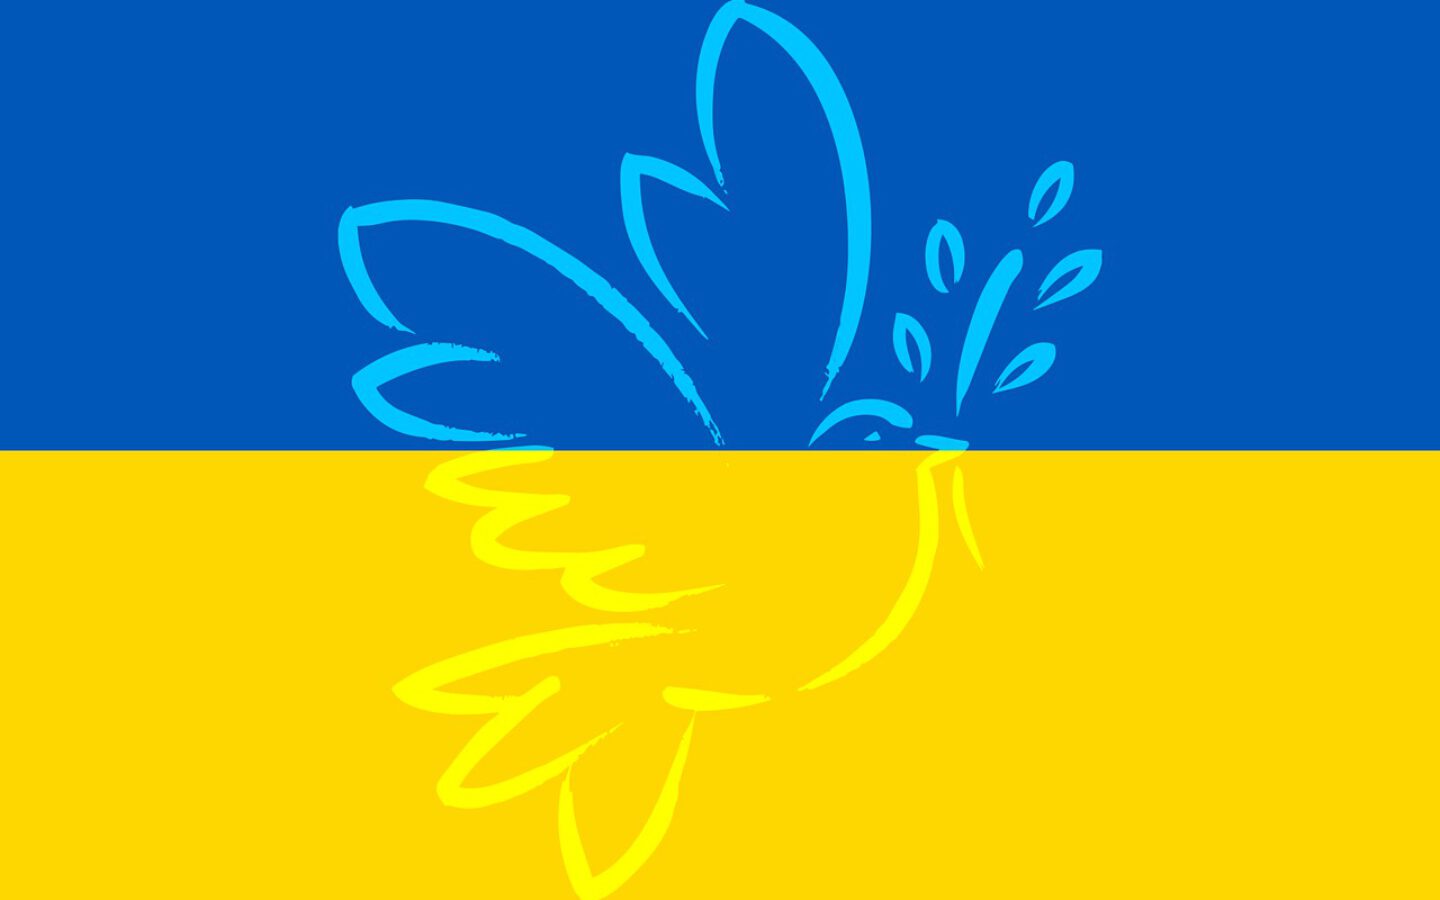 Update (01.04.): Hilfsmöglichkeiten für Menschen in/aus der Ukraine